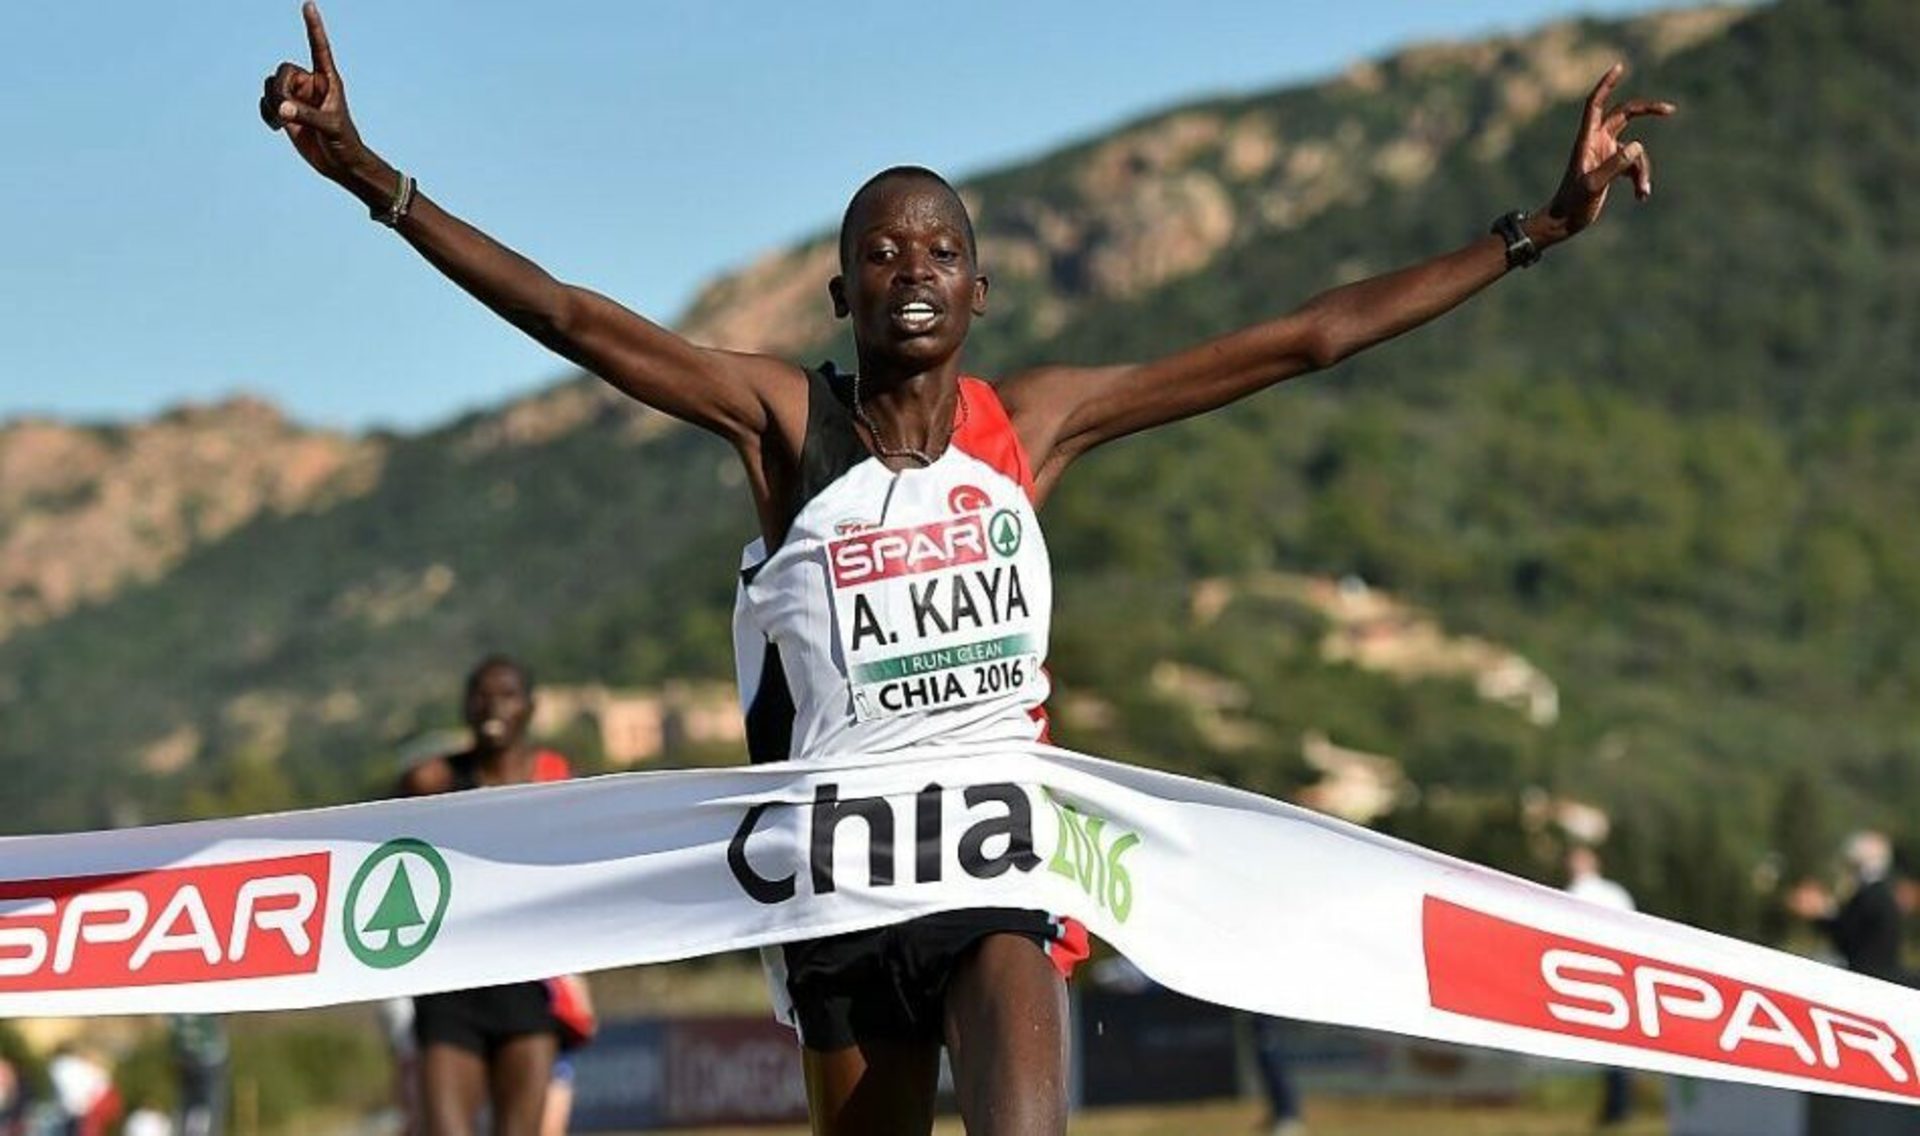 Двукратный чемпион Европы кенийский турок Арас Кайя дисквалифицирован за допинг.